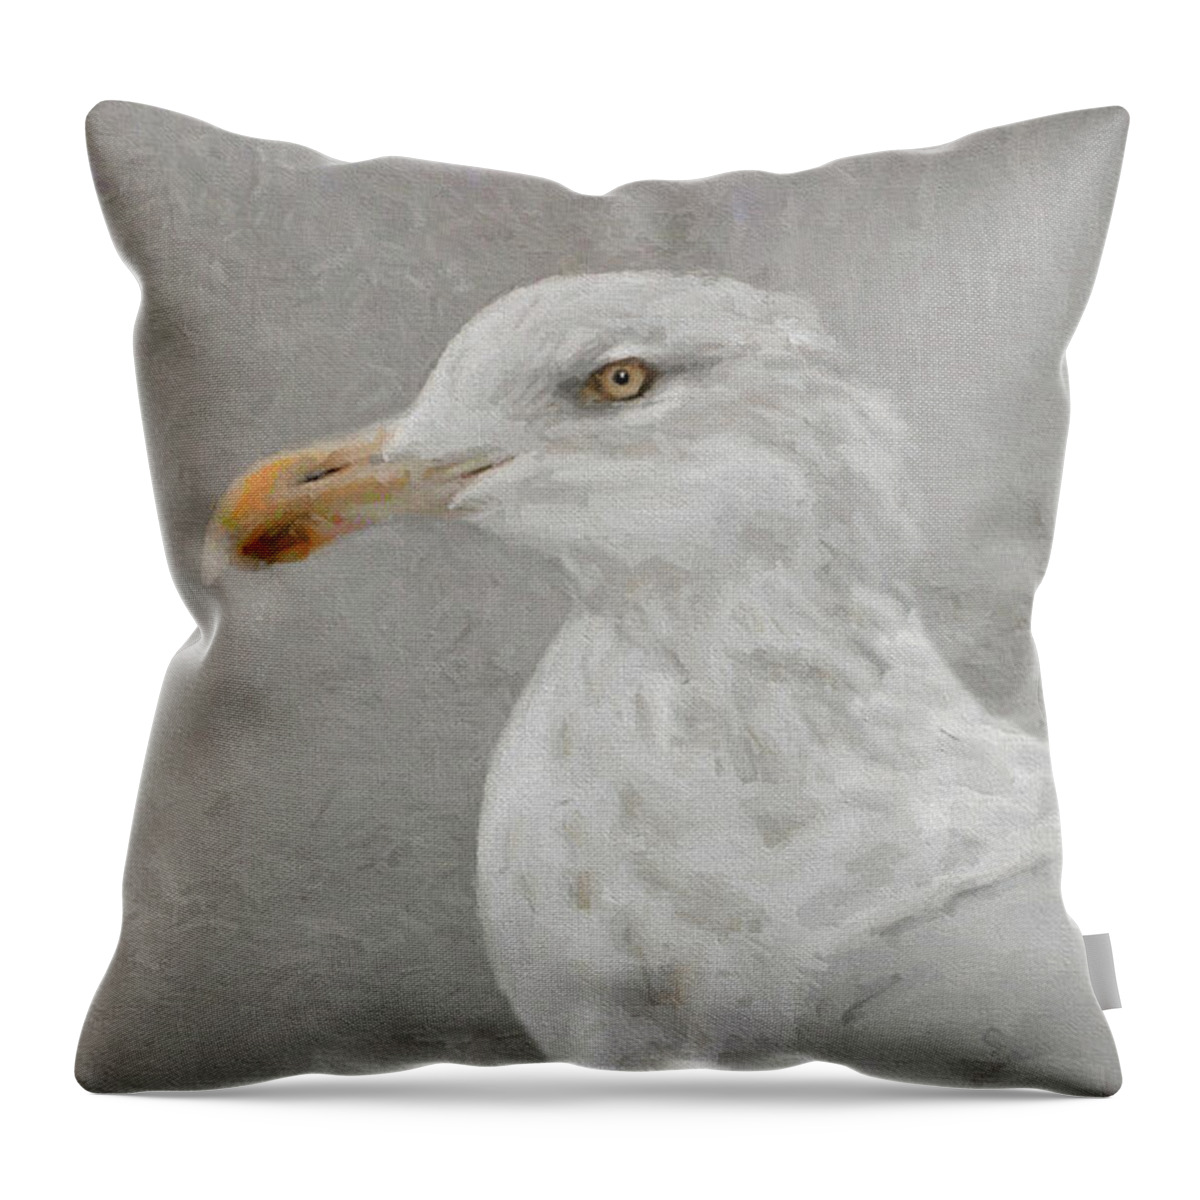 Bird Throw Pillow featuring the photograph Portrait of a Gull by Karen Lynch